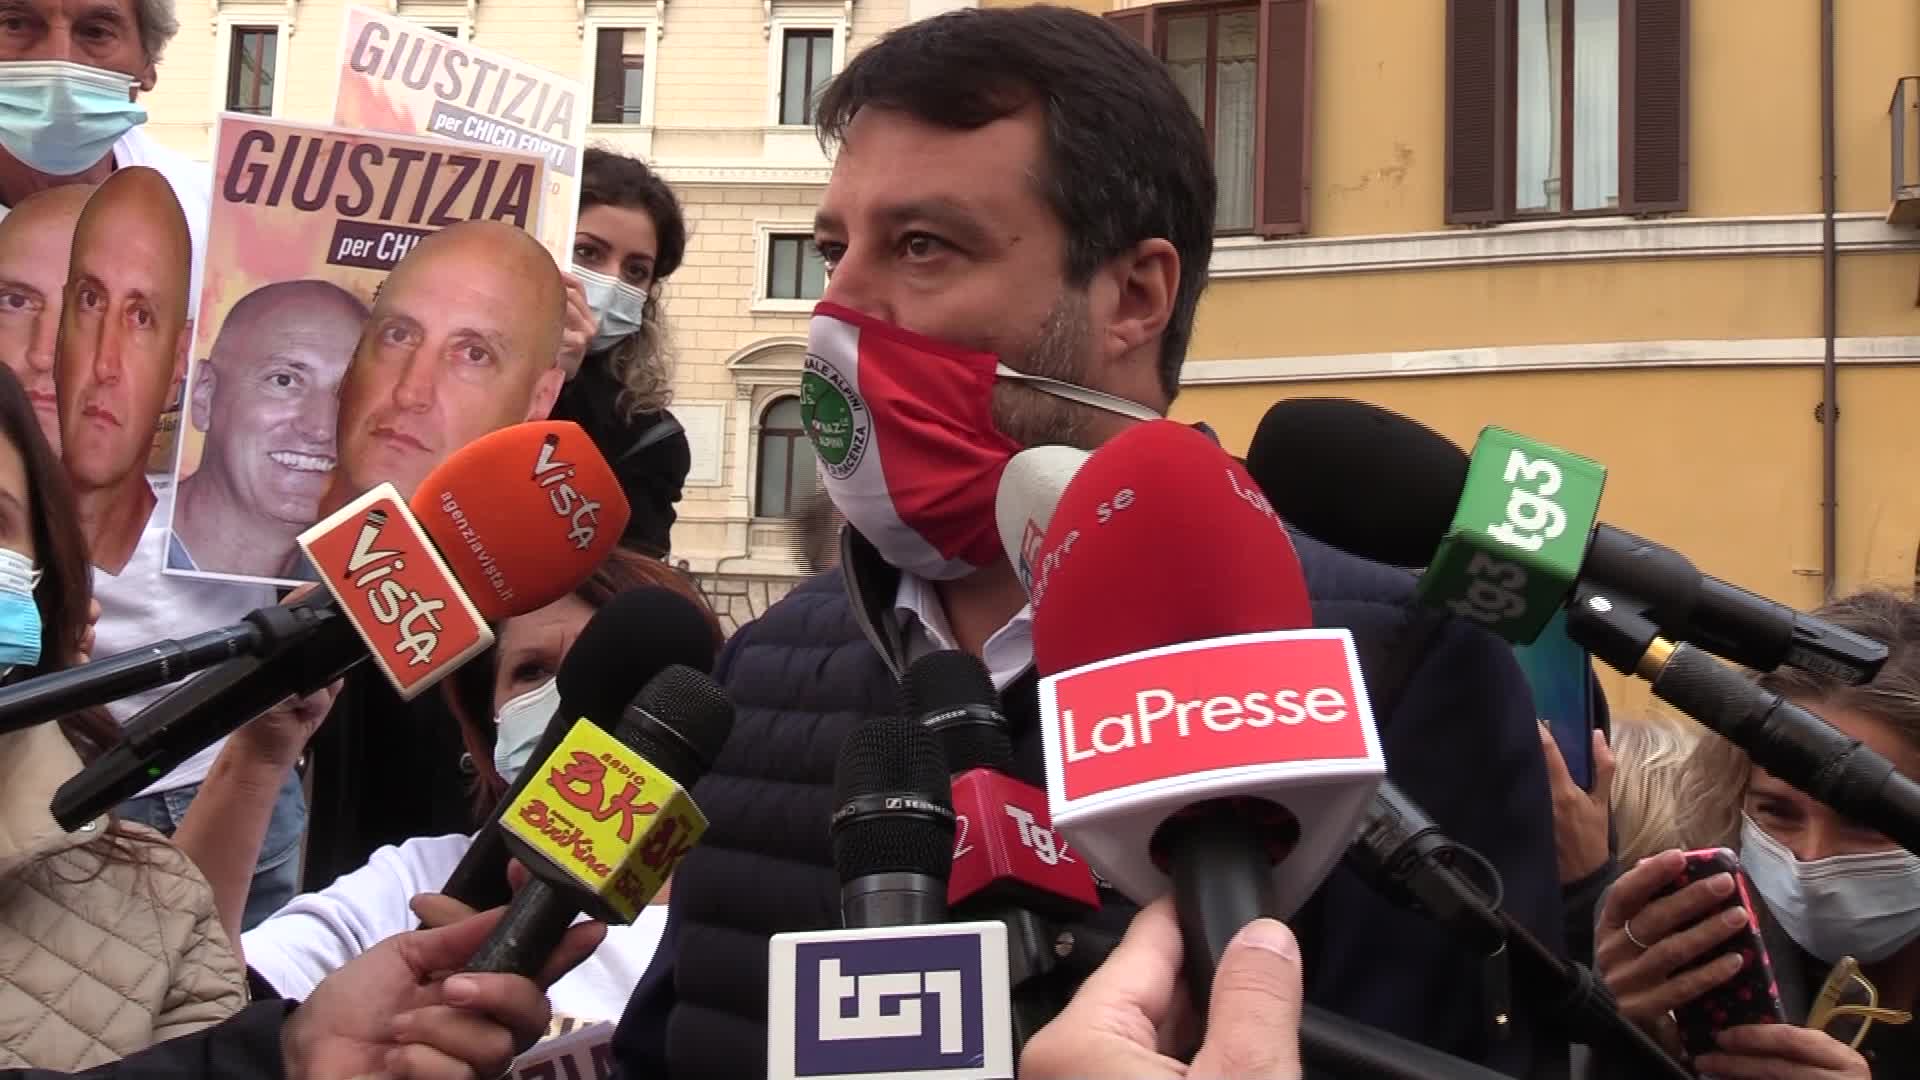 Dpcm, Salvini: "Sono preoccupato, noi vogliamo collaborare"